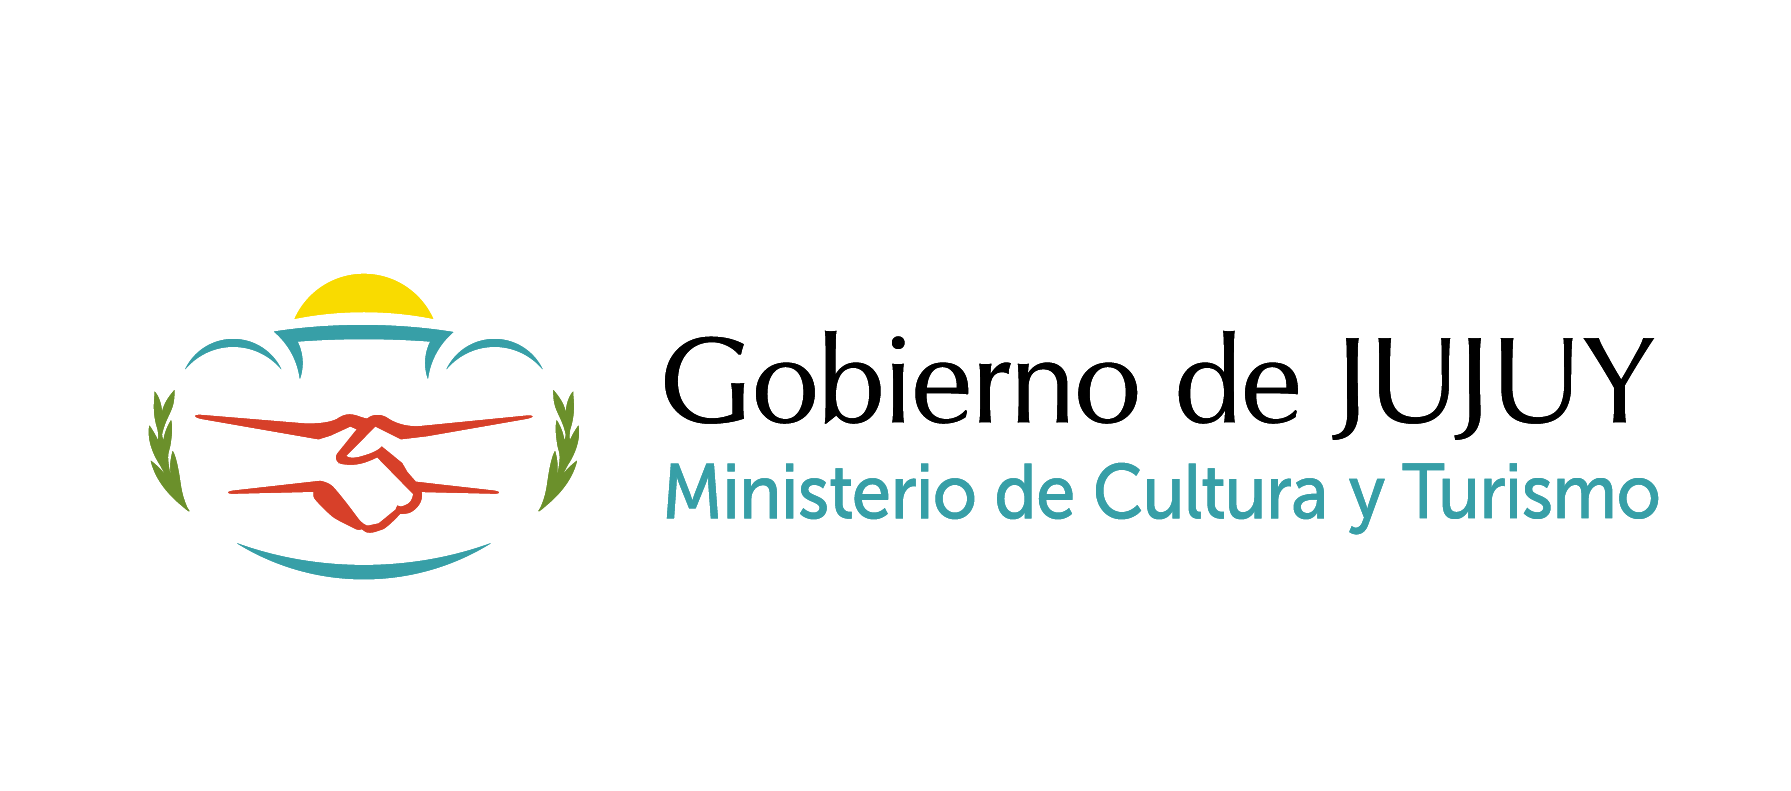 "La ruralidad miradas locales y turismo" logo